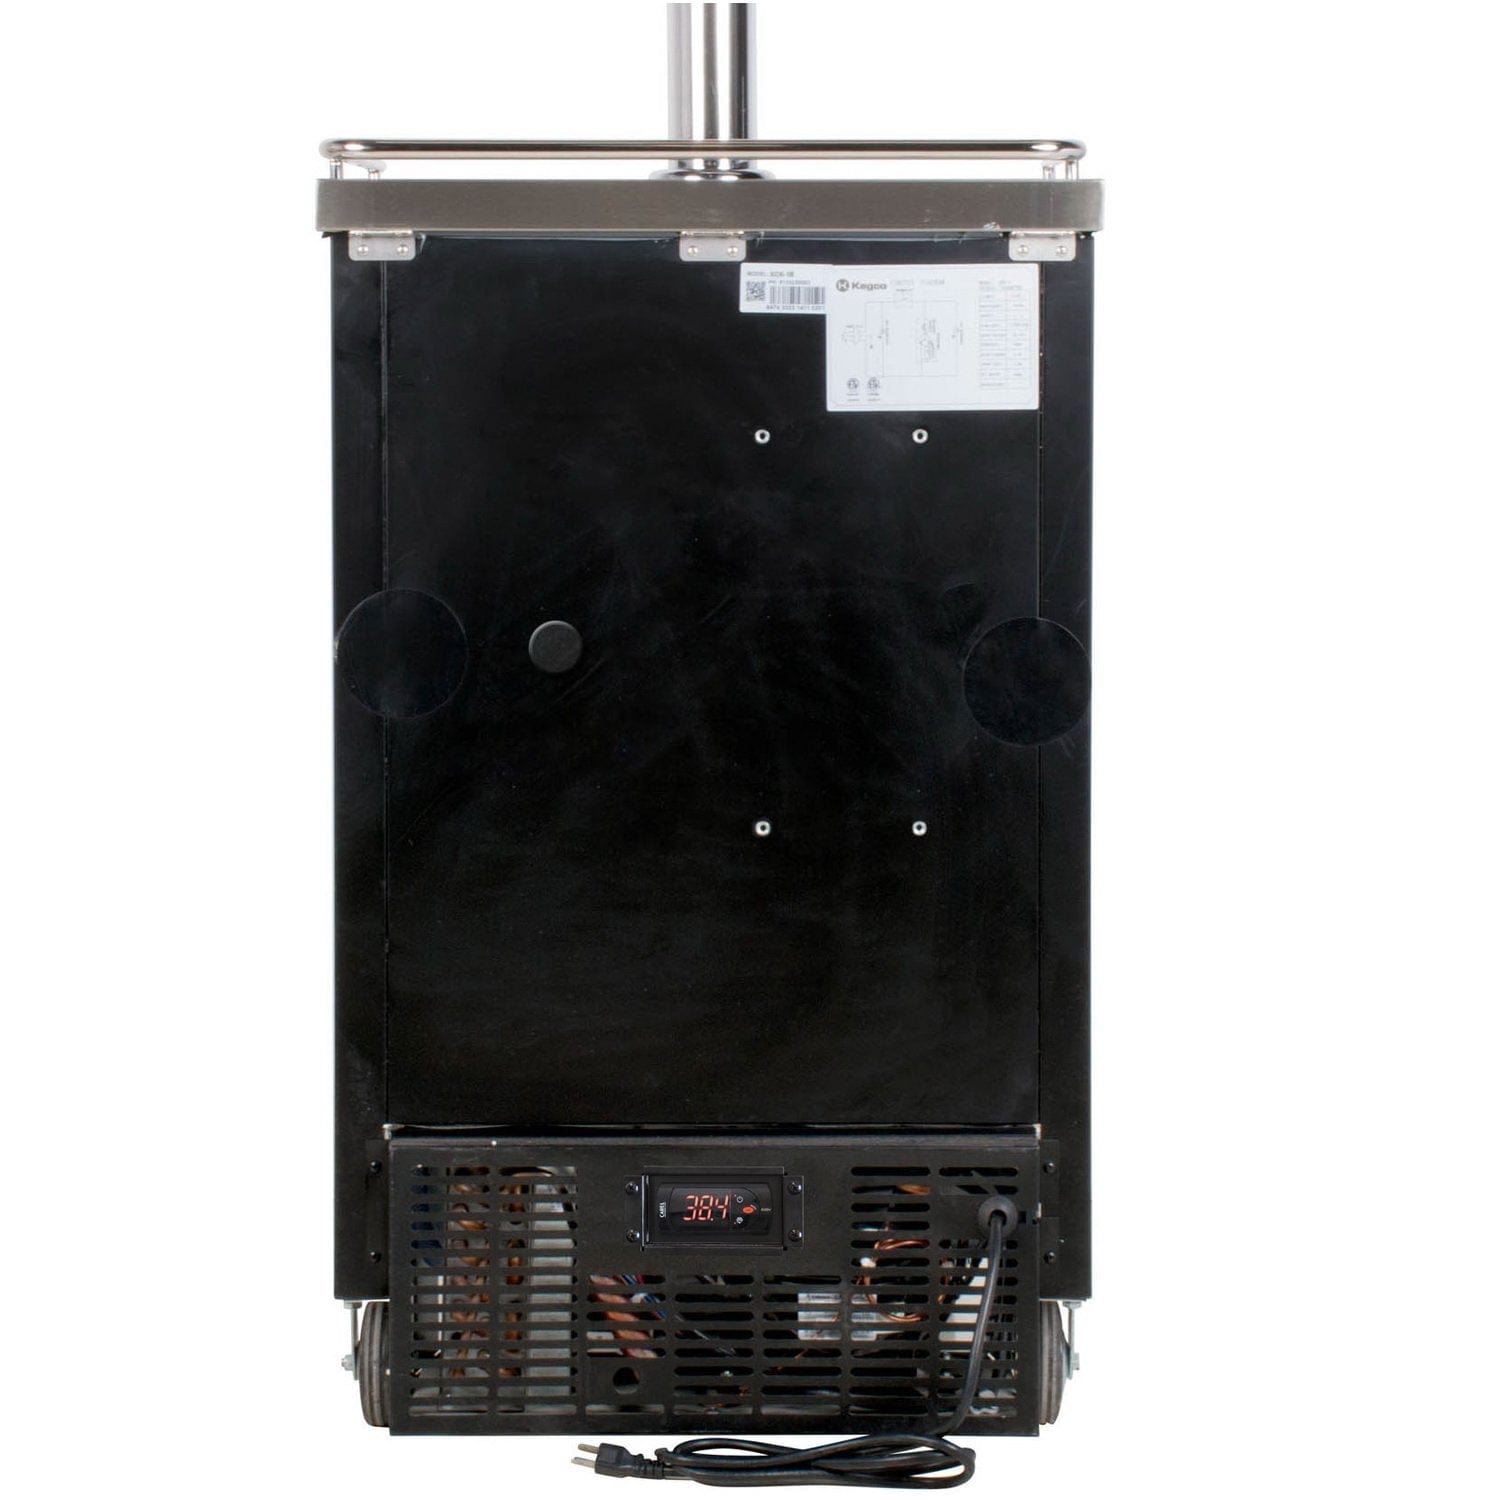 Kegco Two Tap Commercial Kombucharator Kombucha Keg Dispenser - Black